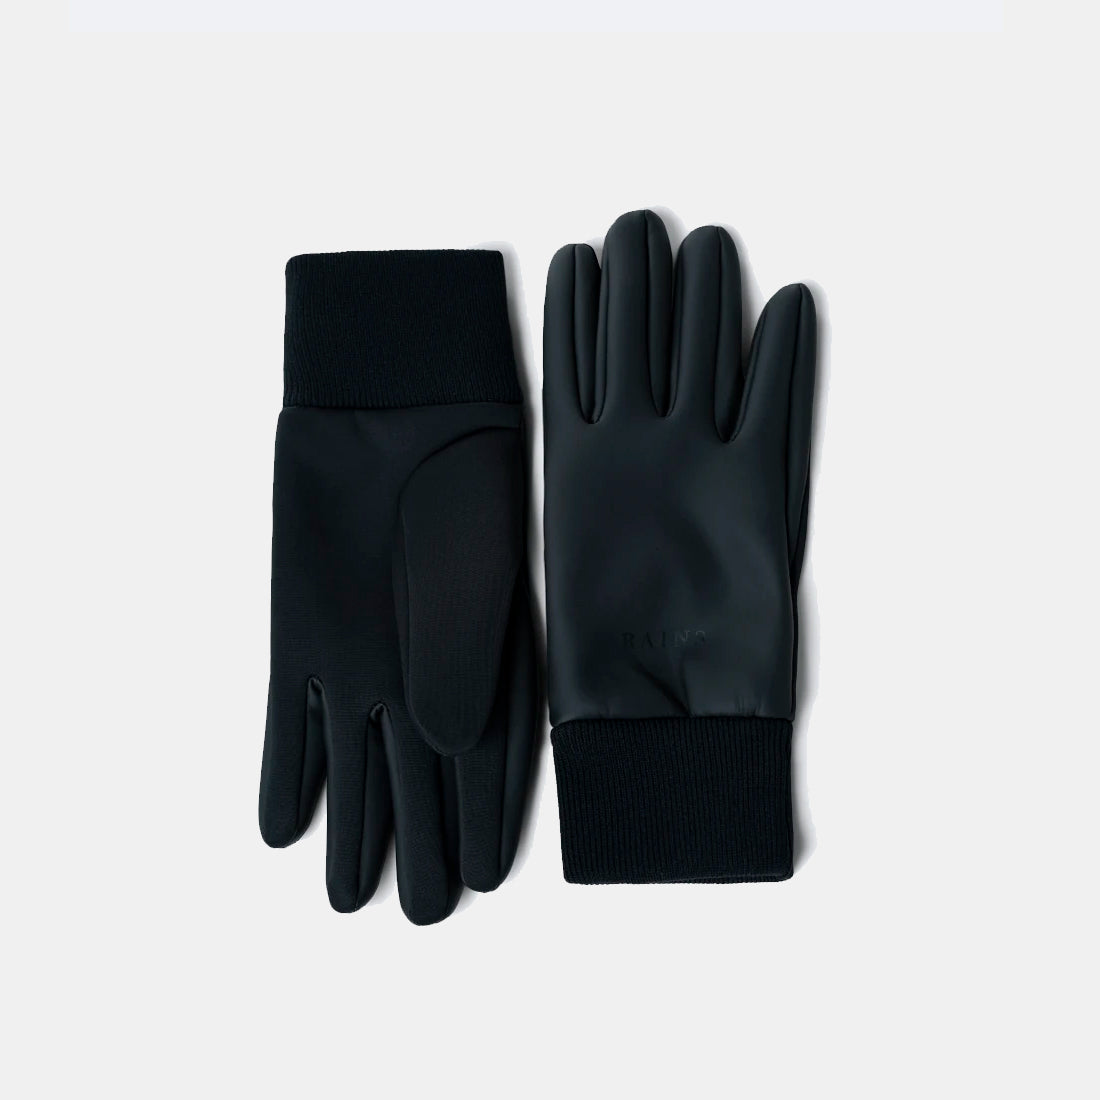 Neopren-Handschuhe